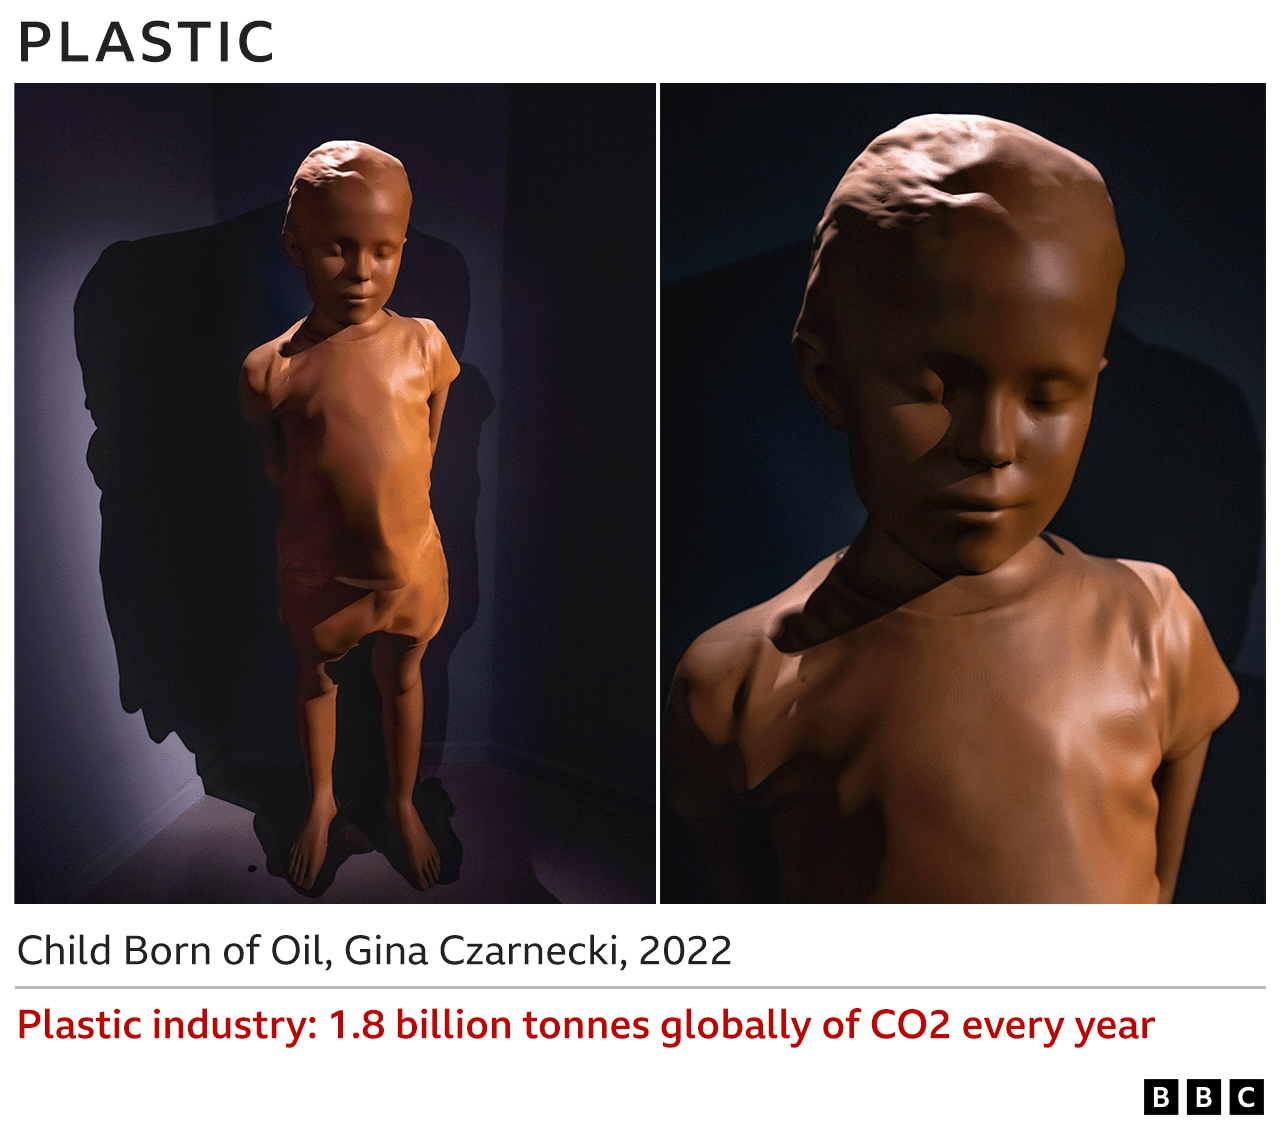 Изображения пластиковой скульптуры - Ребенок, рожденный из нефти, Джина Чарнецки, 2022 г. - Пластмассовая промышленность ежегодно выбрасывает 1,8 млрд тонн CO2 в мире